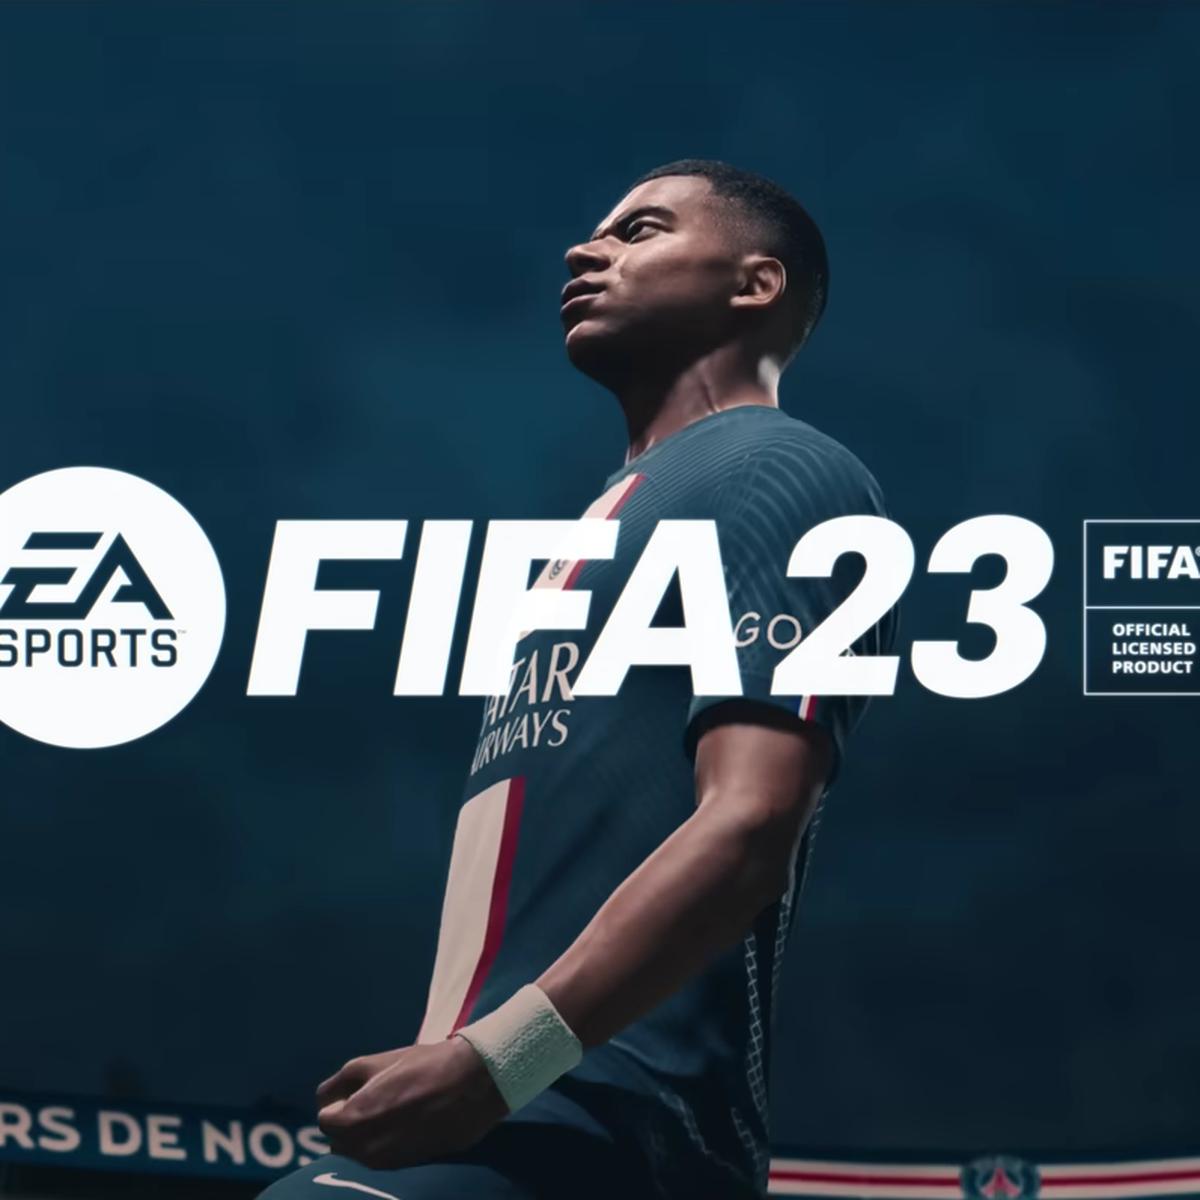 Requisitos de FIFA 21 – ¿Tienes suficiente PC?